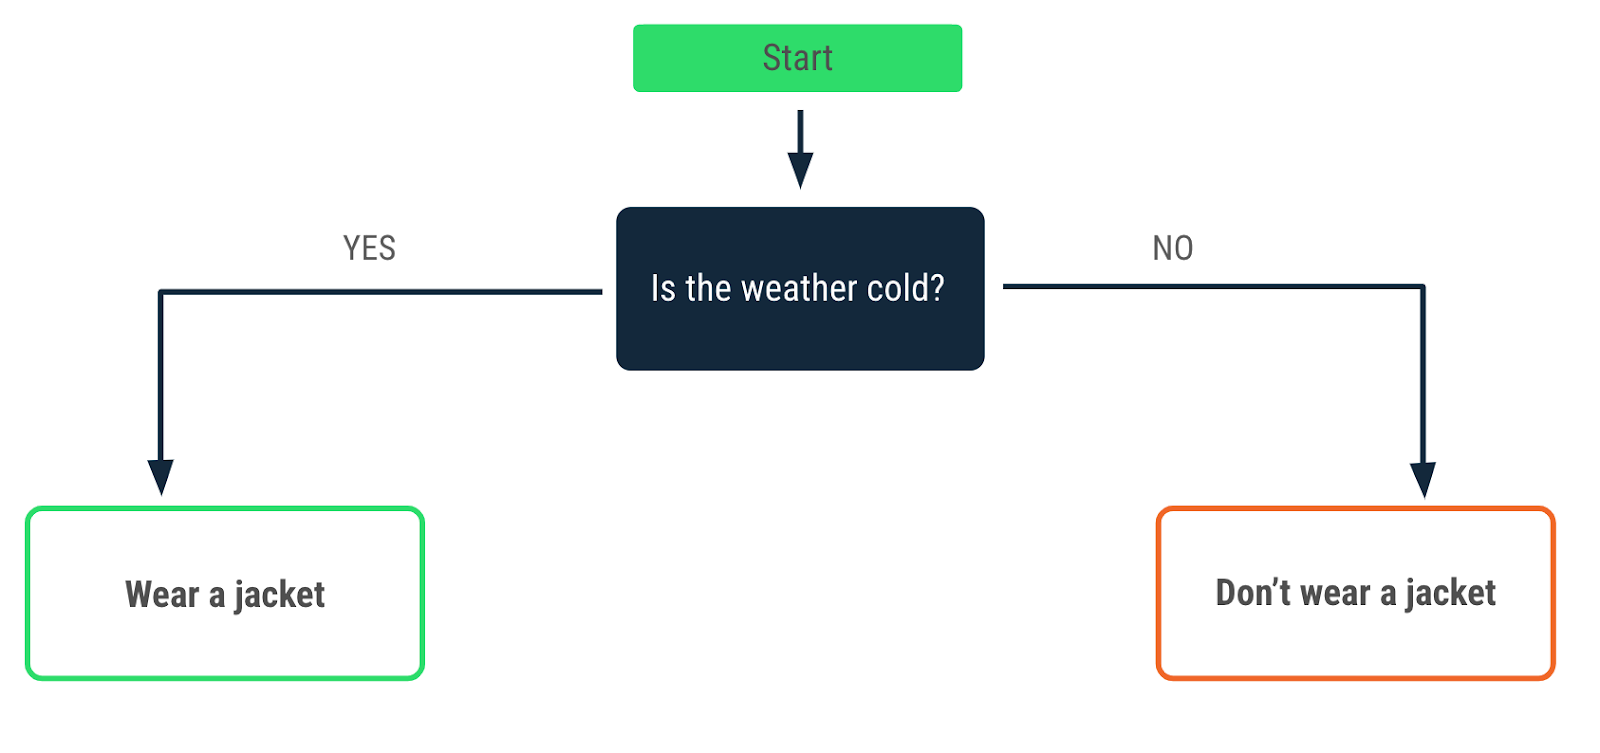 一个流程图，描述了天气寒冷时做出的决策。“yes”箭头指向“Wear a jacket”消息，“no”箭头指向“Don't wear a jacket”消息。